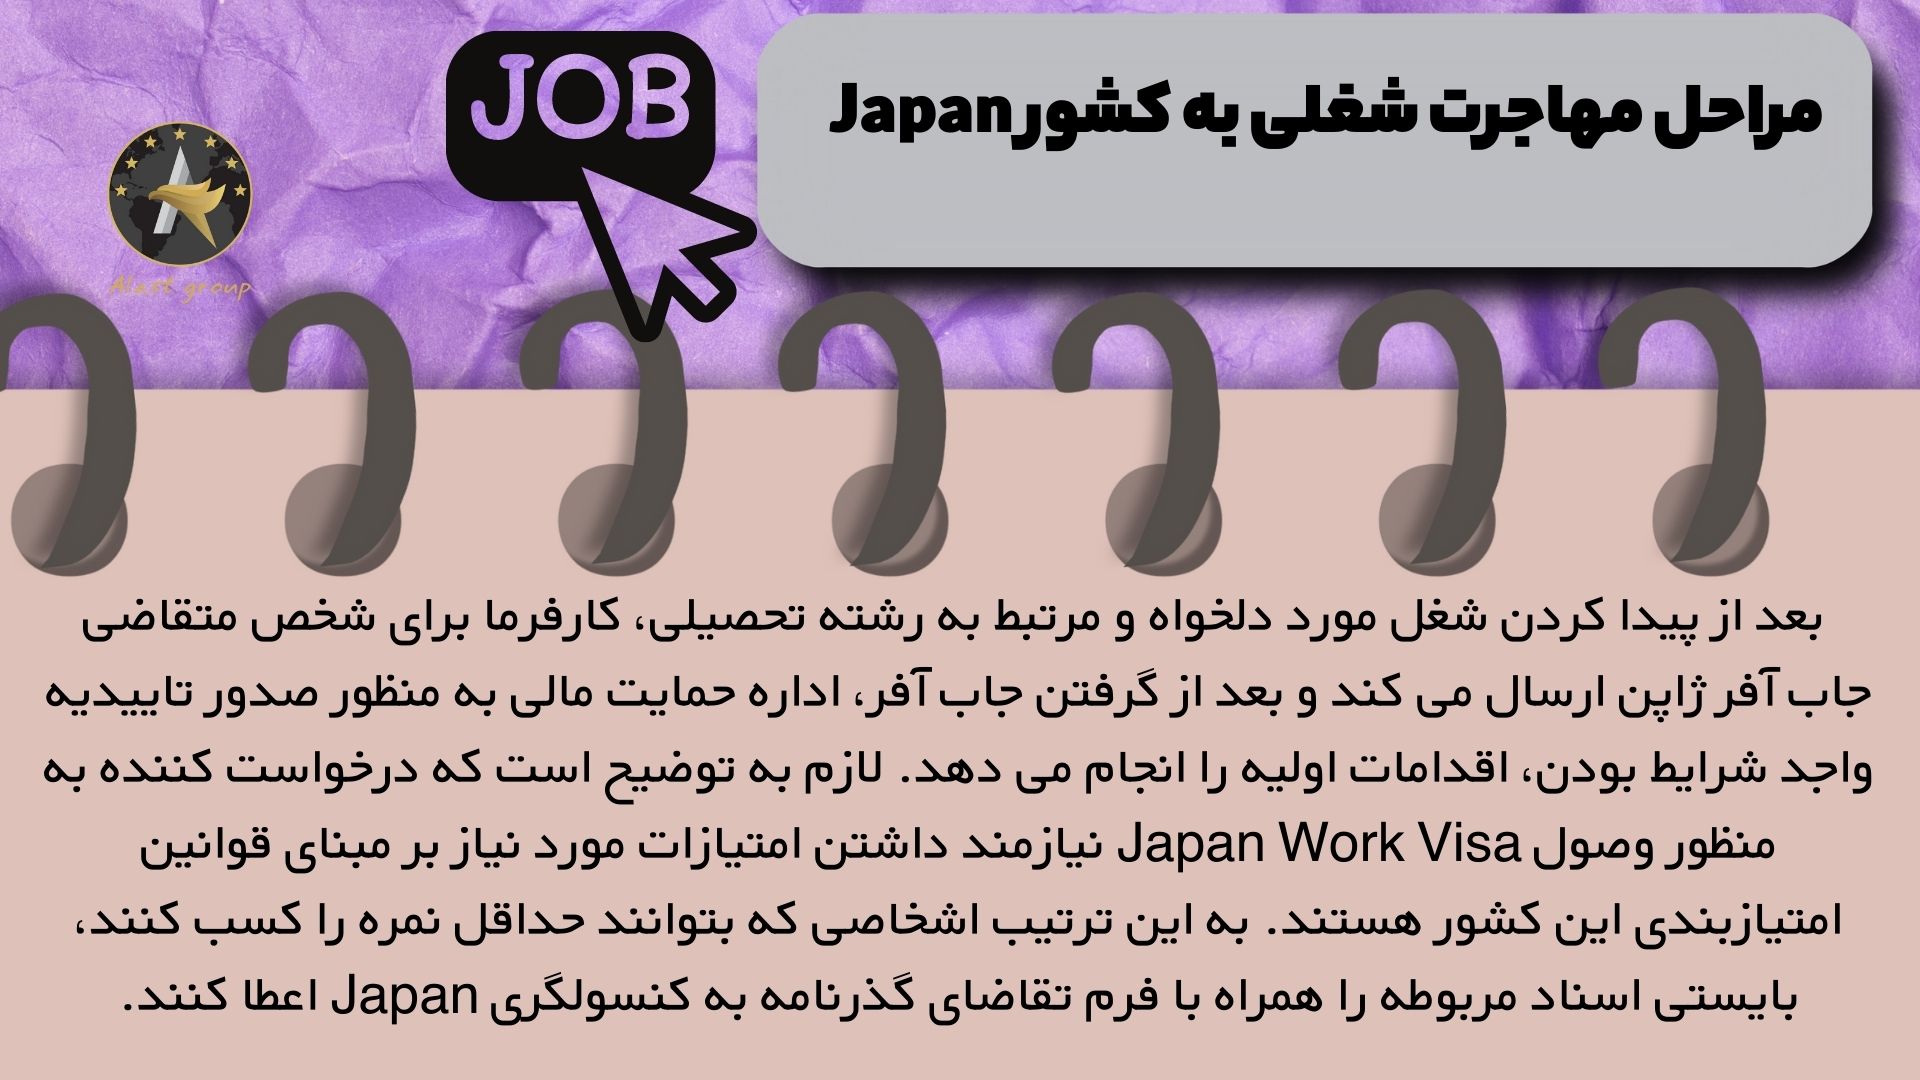 مراحل مهاجرت شغلی به کشور Japan